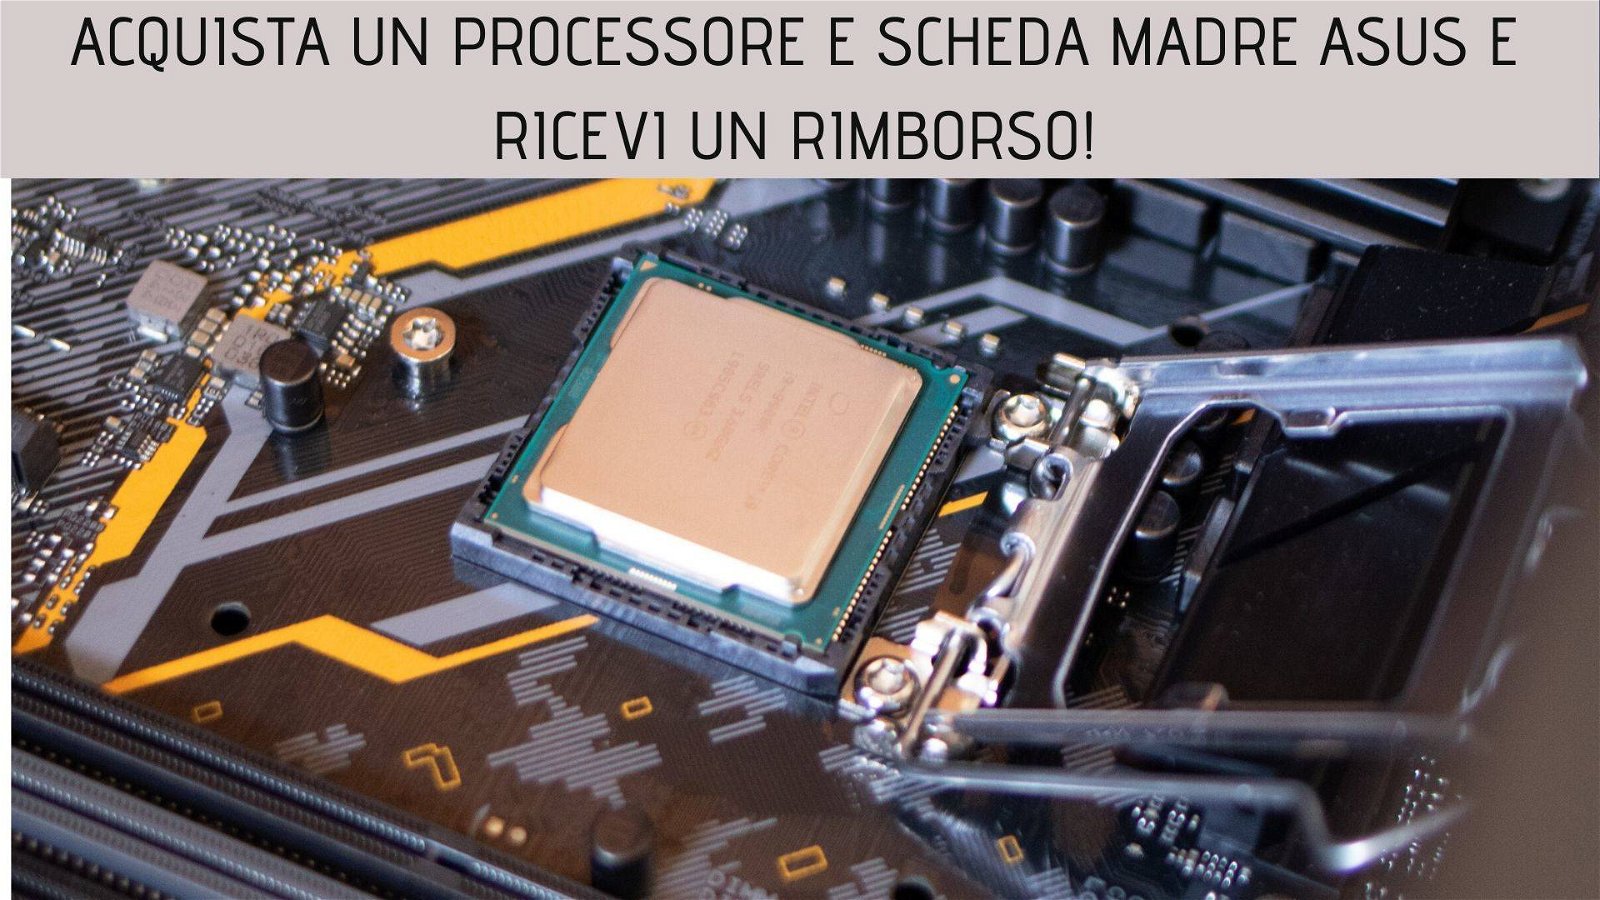 Immagine di 130€ di rimborso acquistando una scheda madre Asus e un processore Intel